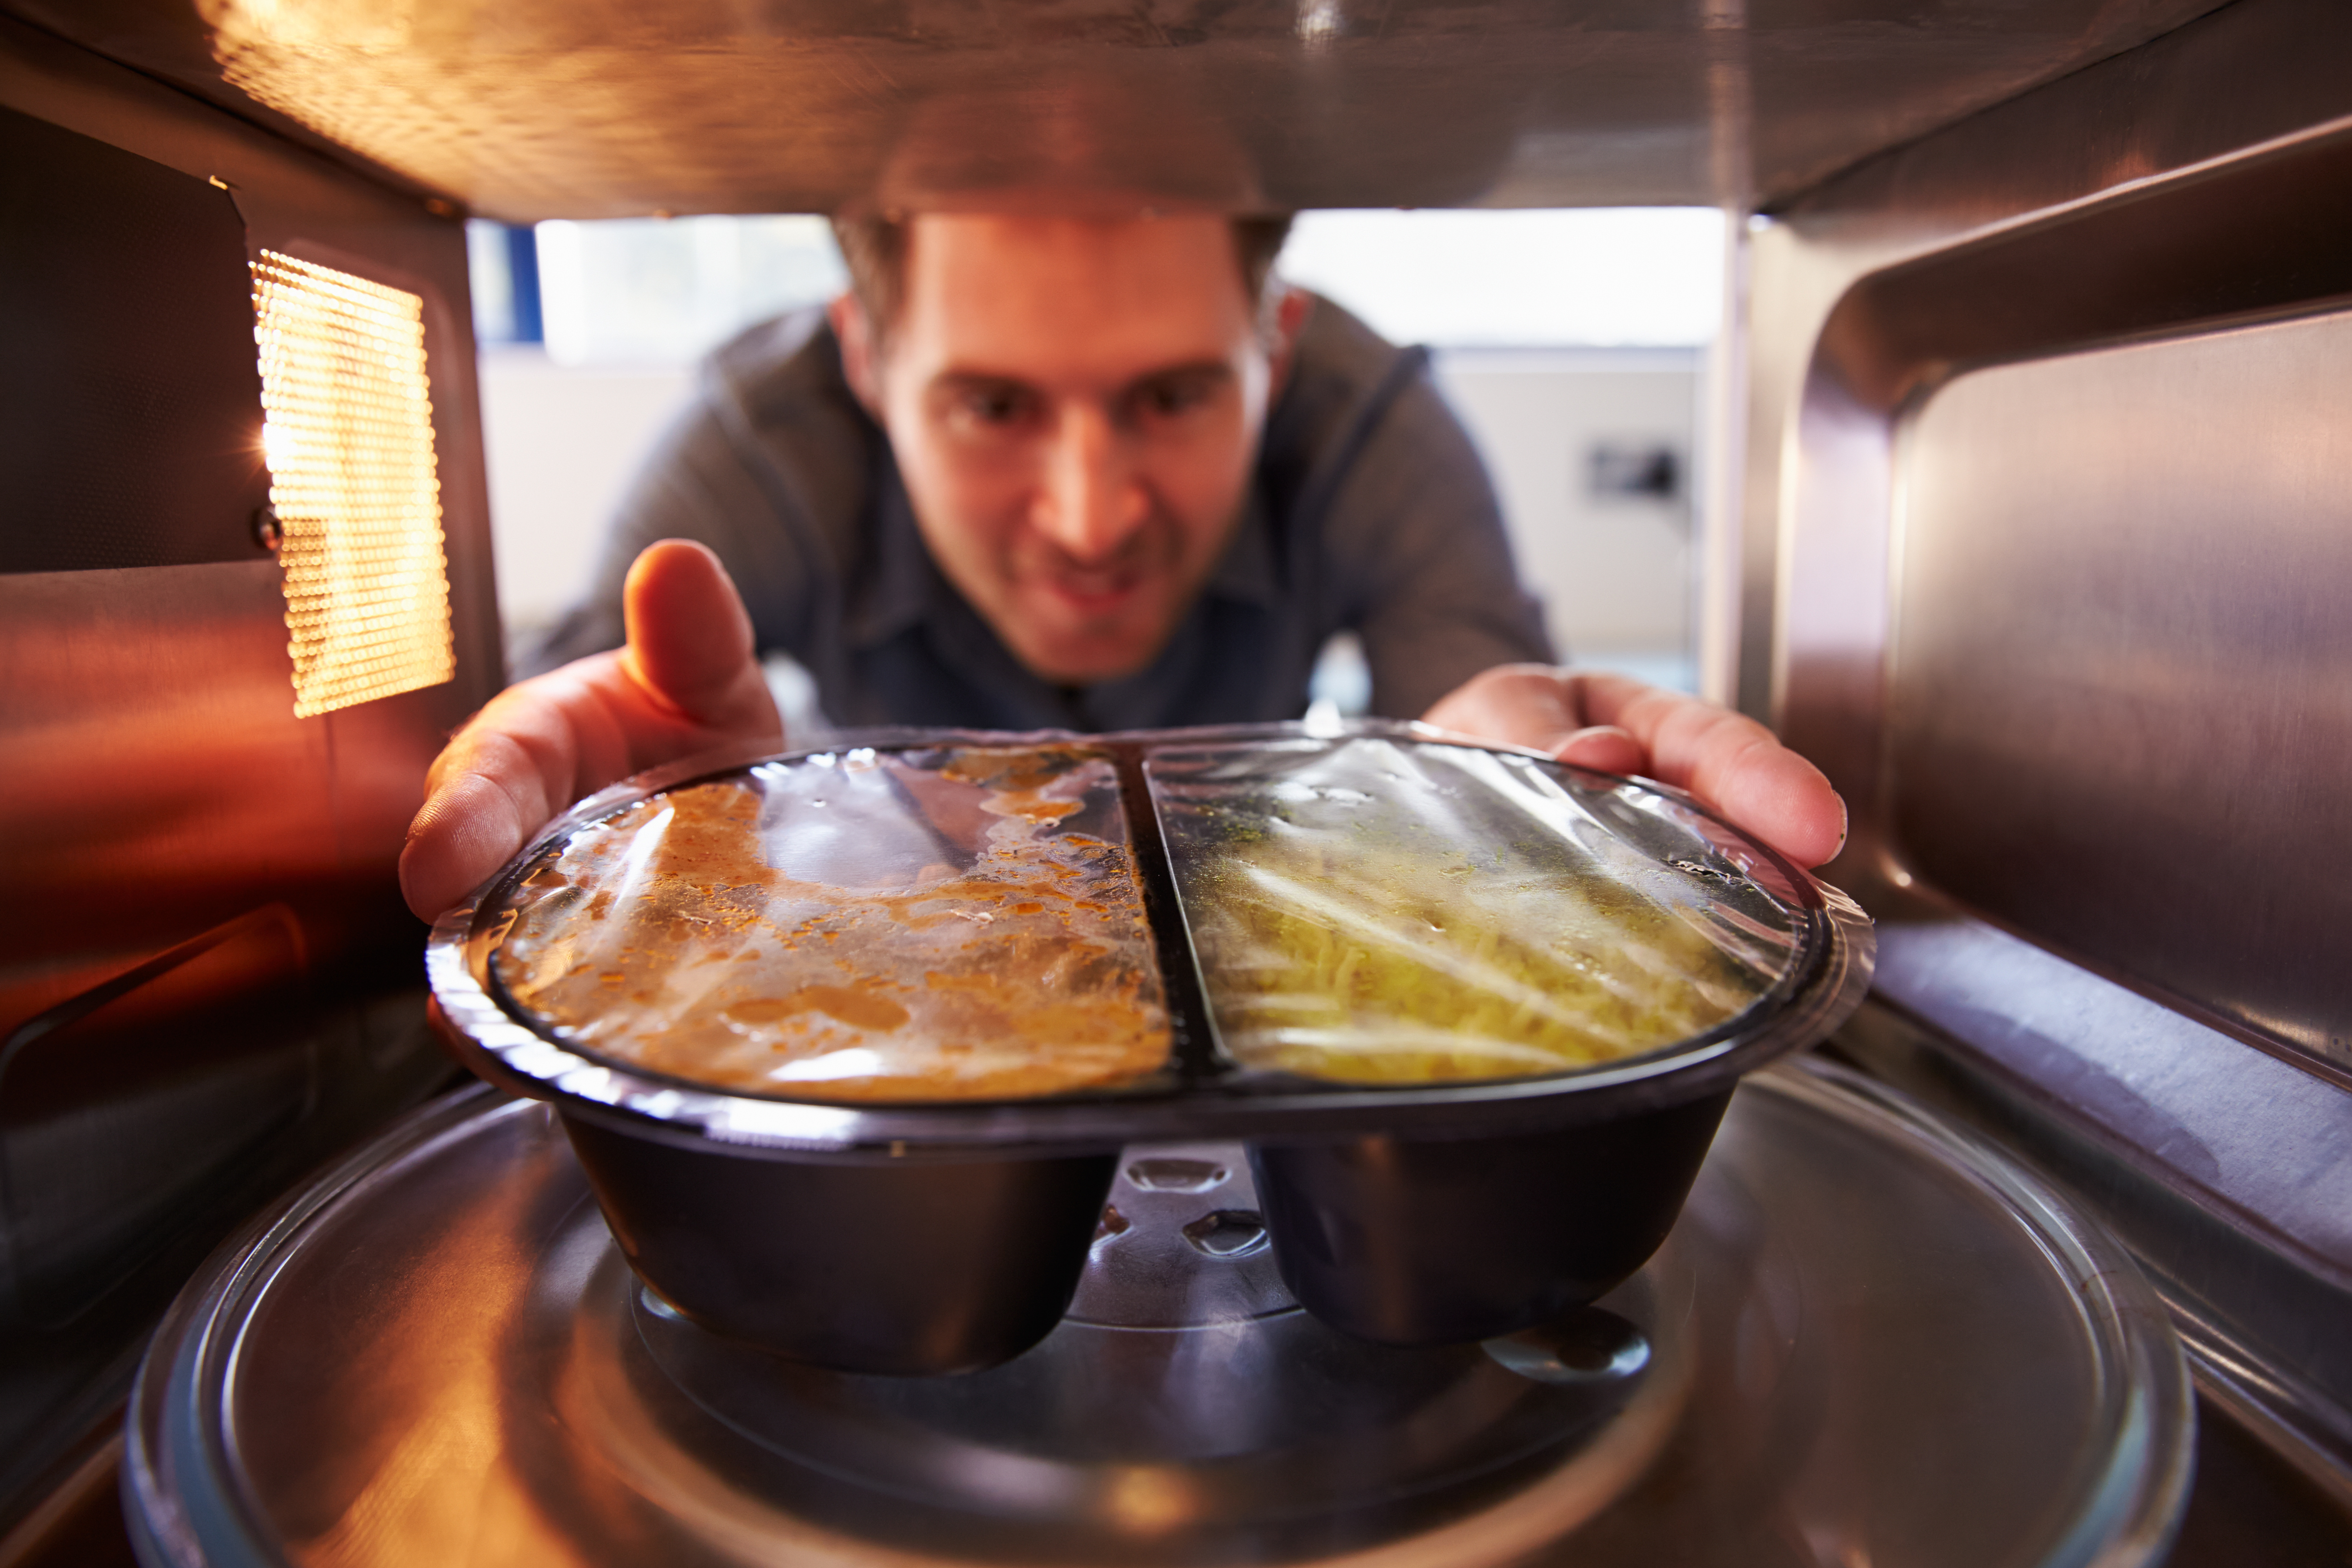 Можно подогреть еду в. Еда из микроволновки. Разогреть еду в микроволновке. Микроволновая печь с едой. Подогревание пищи.